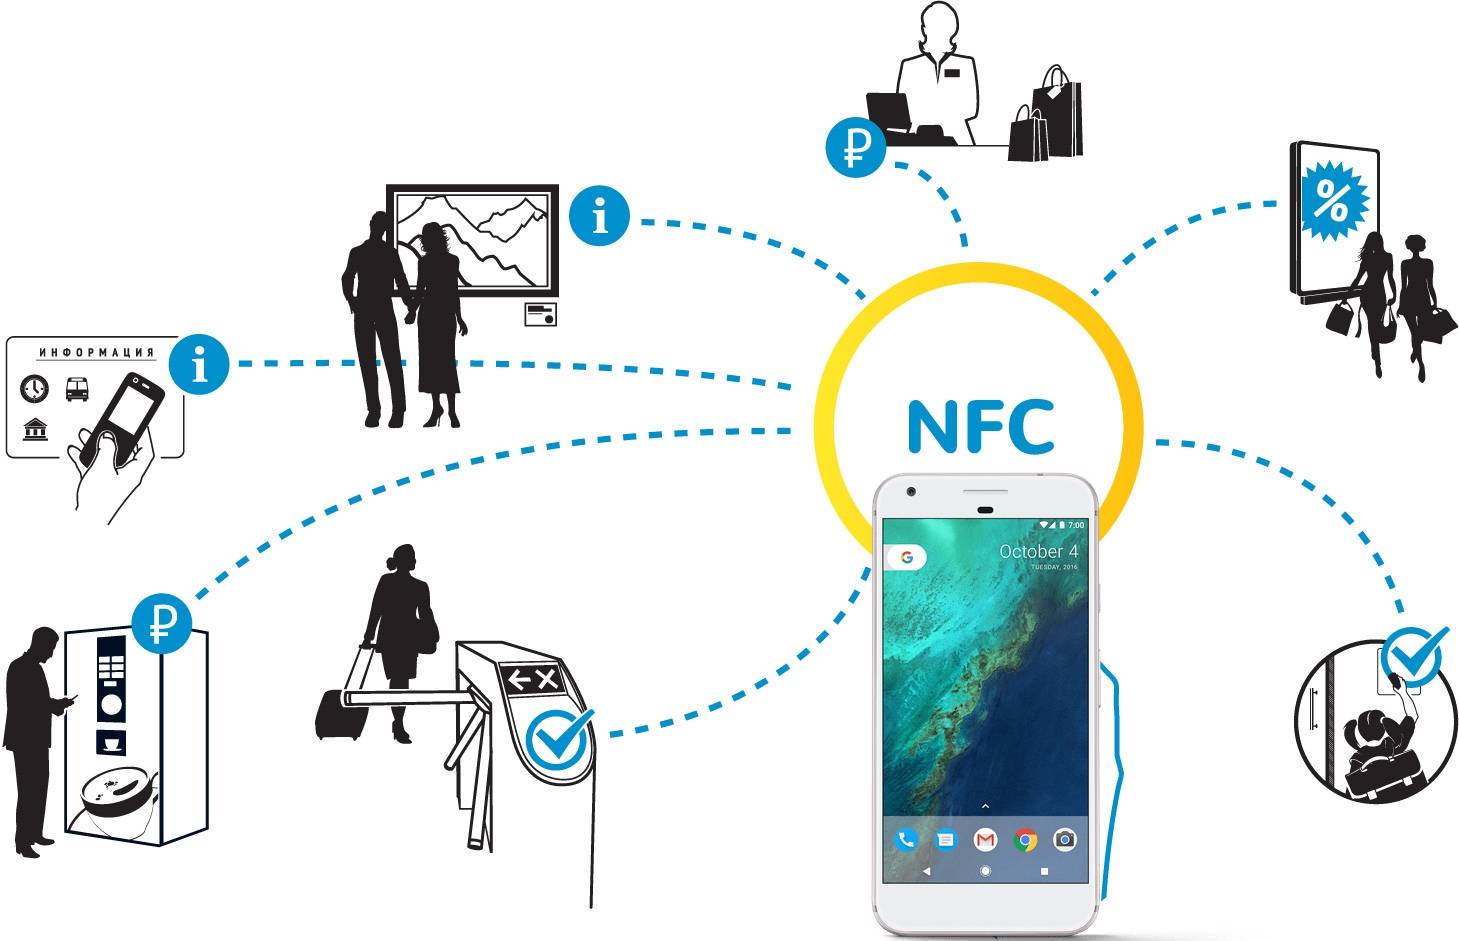 Как пользоваться nfc в телефоне для оплаты, настроить андроид и подключить карту